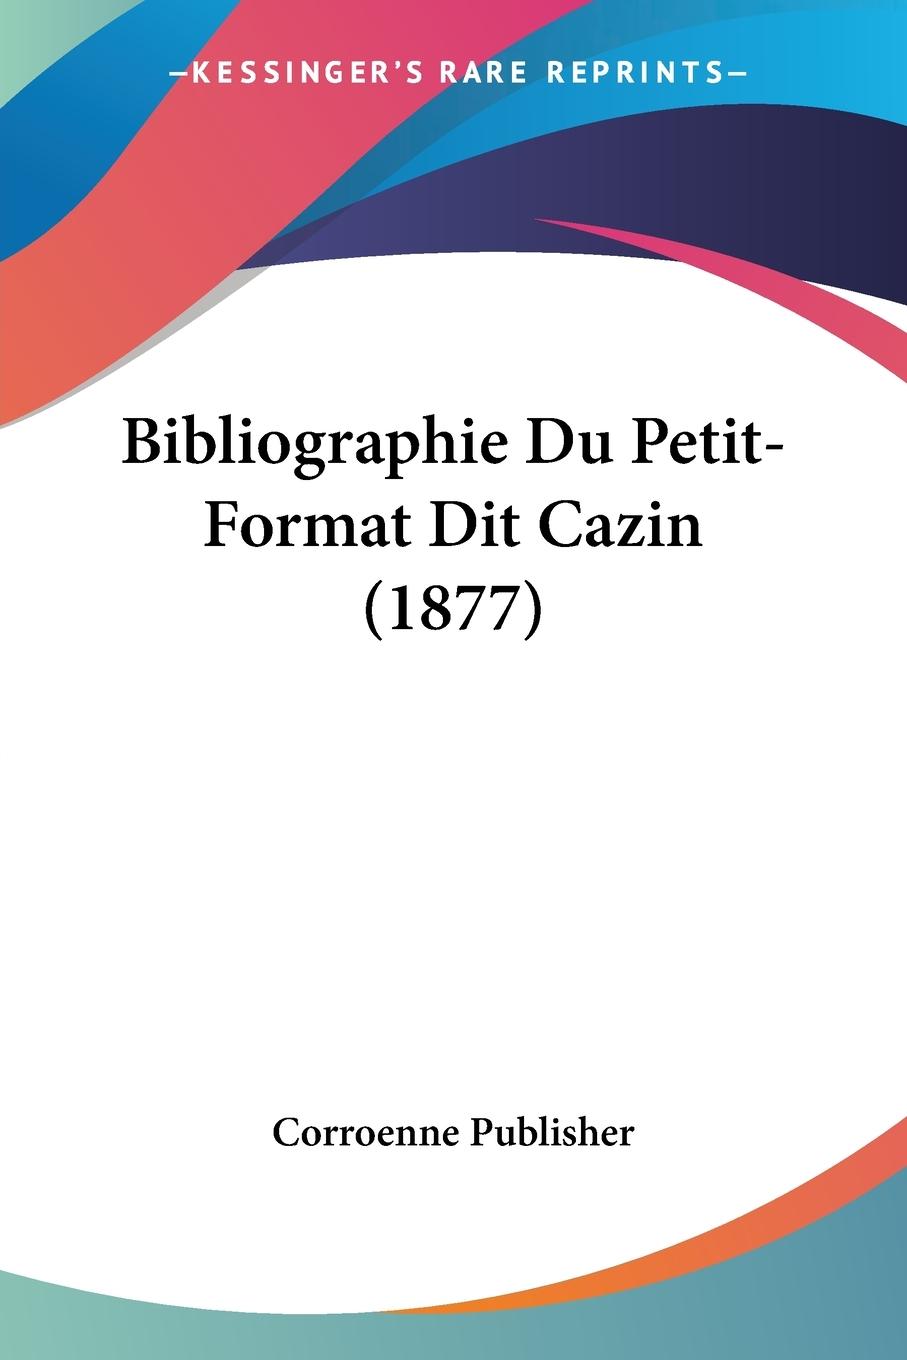 Bibliographie Du Petit-Format Dit Cazin (1877) - Corroenne Publisher